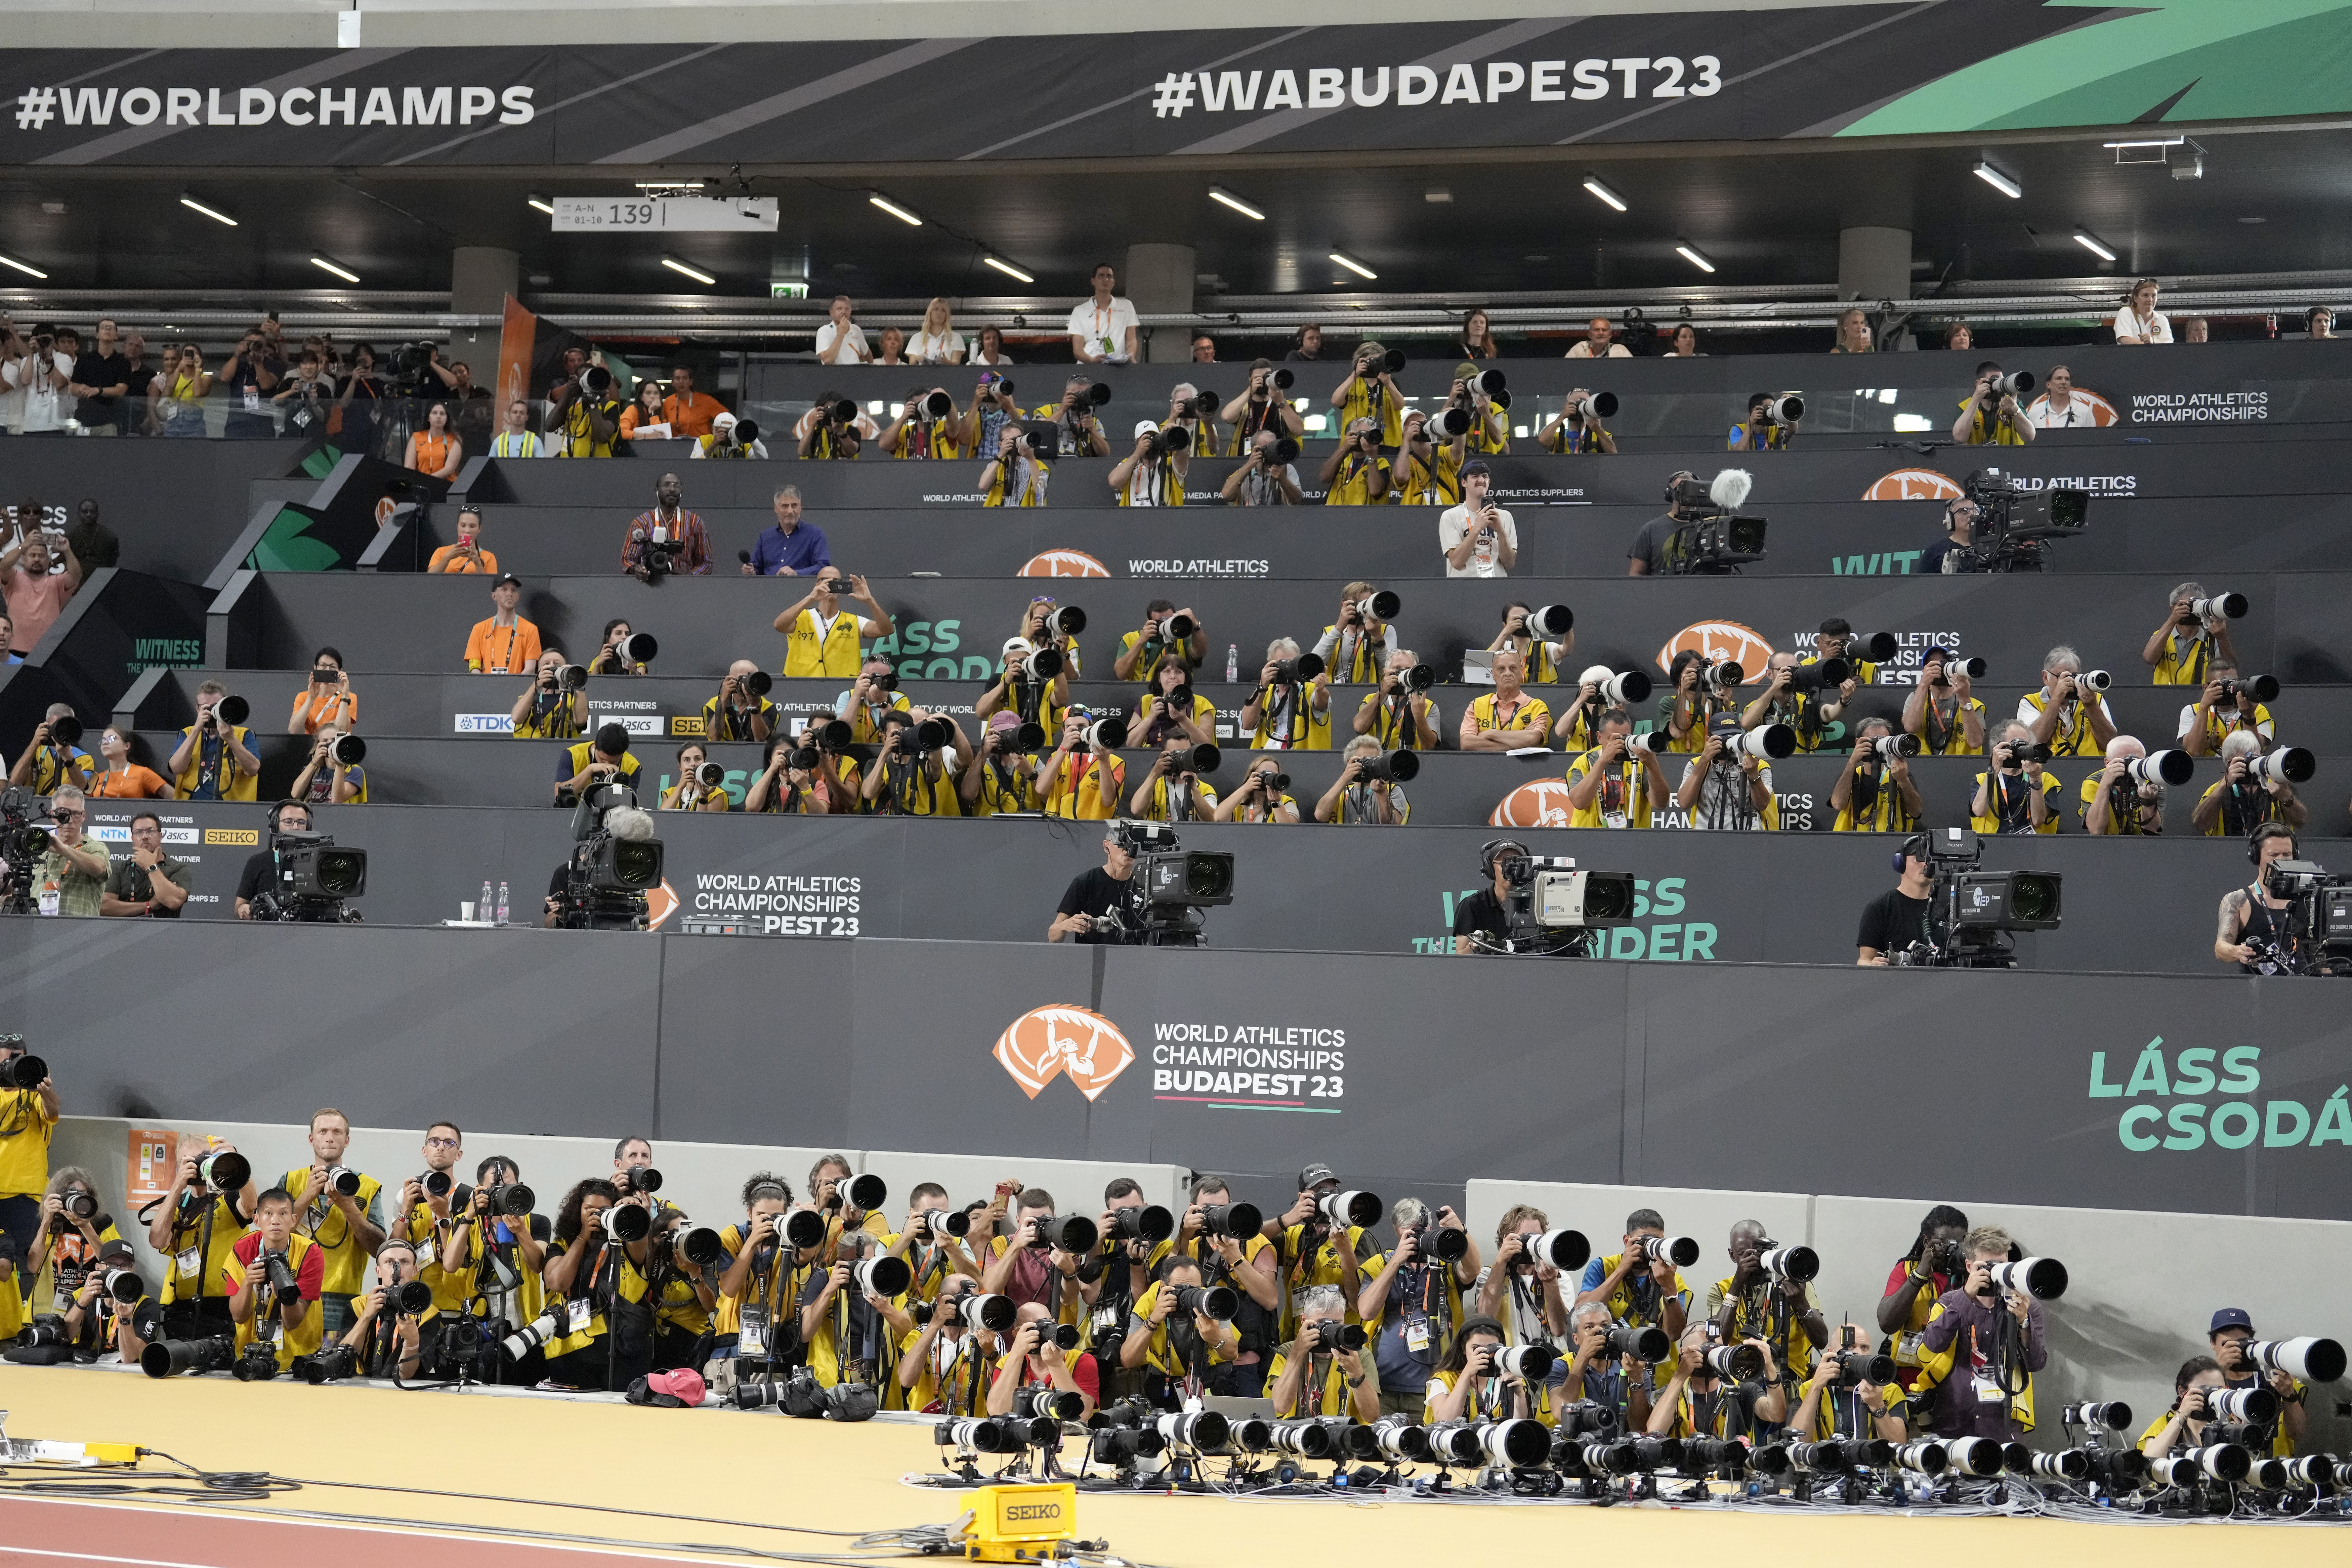 World Athletics Championships Budapest 23 (@wabudapest23) / X